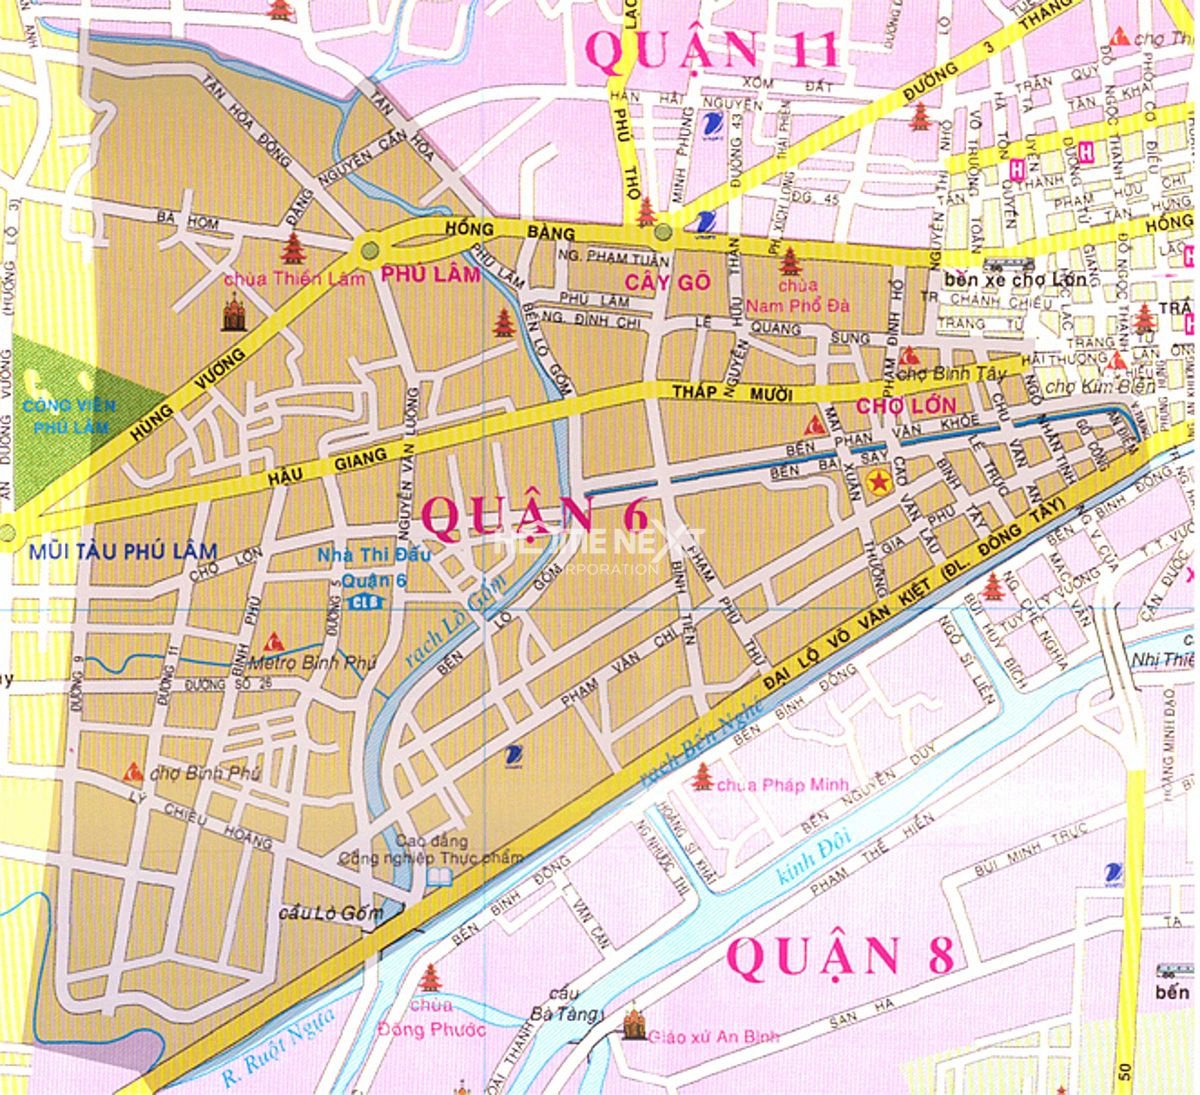 Bạn đang tìm kiếm thông tin về Bản đồ Quận 6 TP Hồ Chí Minh mới nhất 2024? Đến với chúng tôi tại Địa Ốc Thông Thái, bạn sẽ được cung cấp những thông tin đầy đủ và chính xác về địa bàn này. Từ những con đường mới, đến những trung tâm Thương mại sầm uất, tất cả sẽ được cập nhật đầy đủ trên bản đồ của chúng tôi.